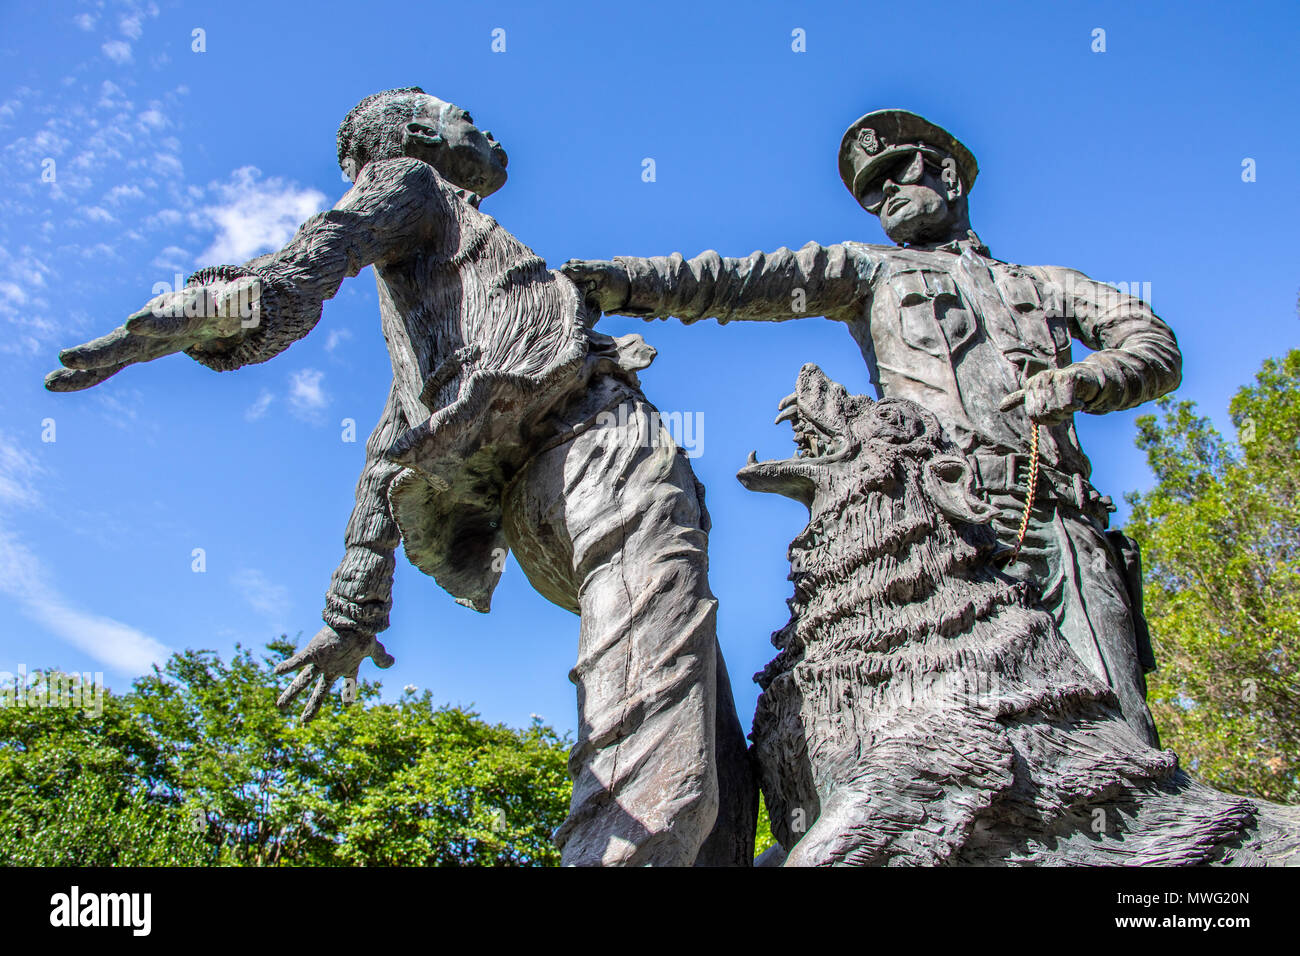 El soldado de infantería, estatua esculpida por Ronald S McDowell, Kelly Ingram Park, Birmingham, Alabama, EE.UU. Foto de stock